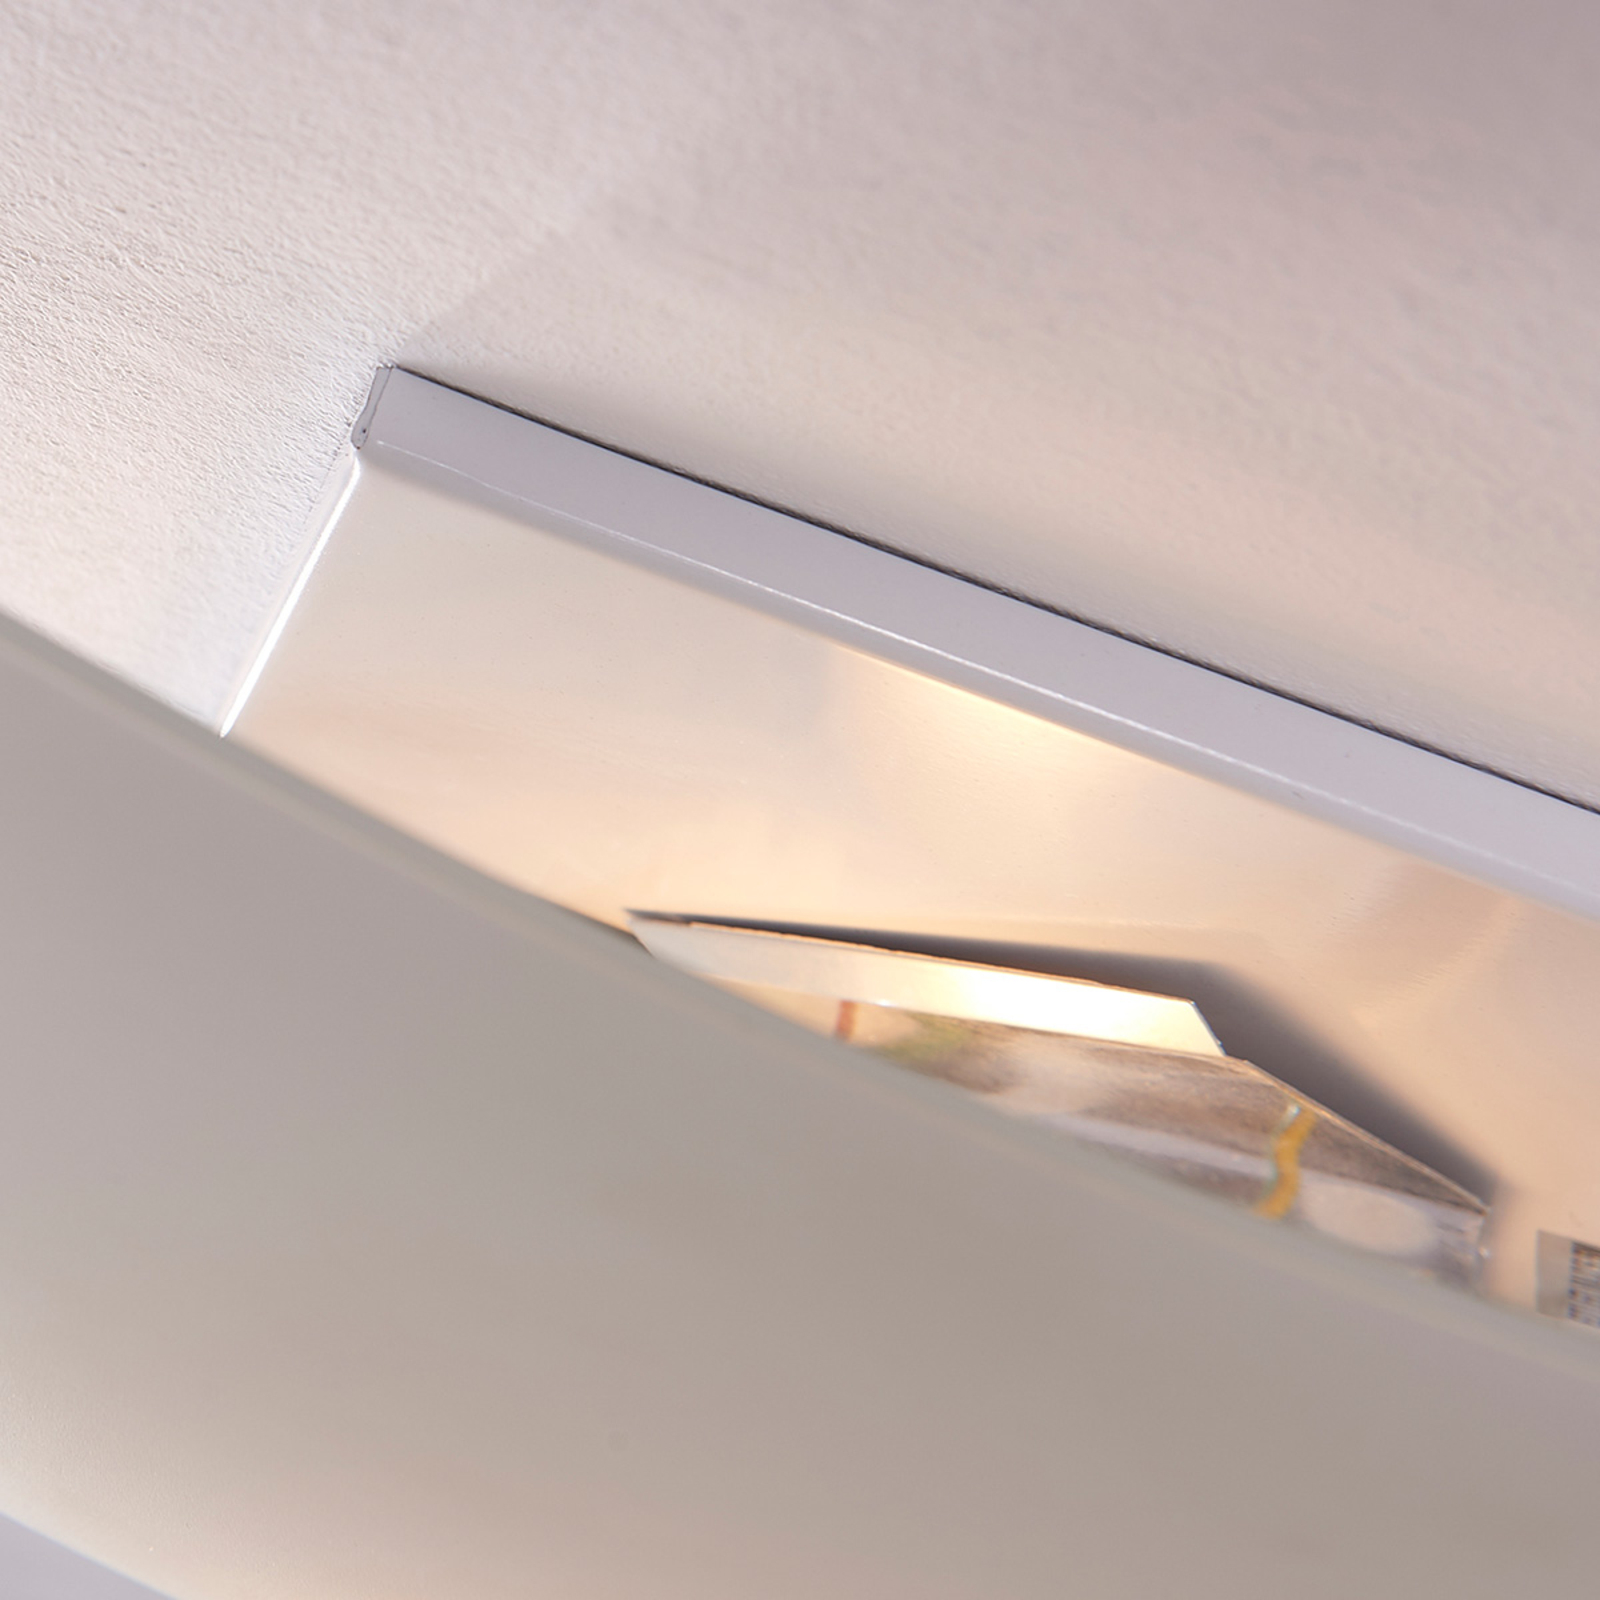 Vinzent ceiling light, E27